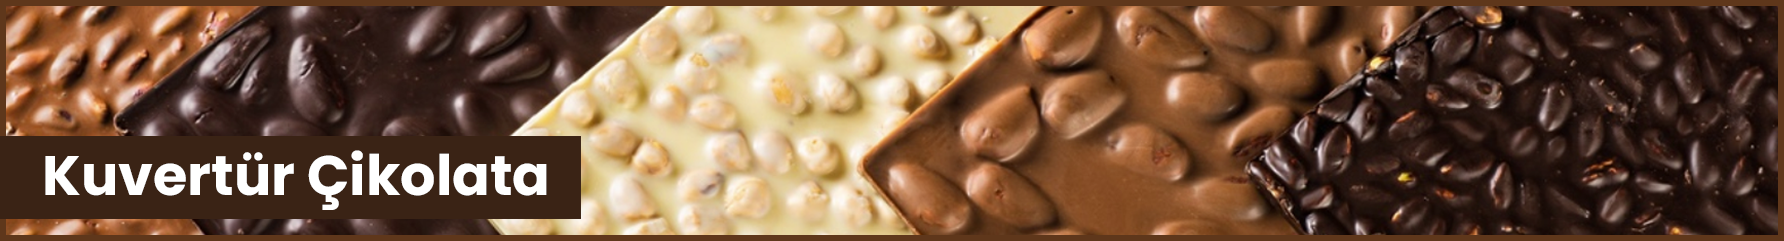 Kuvertür Çikolata Nedir, Yenir Mi? ⭐️ En İyi Kiloluk Kalıp Çikolata Satışı